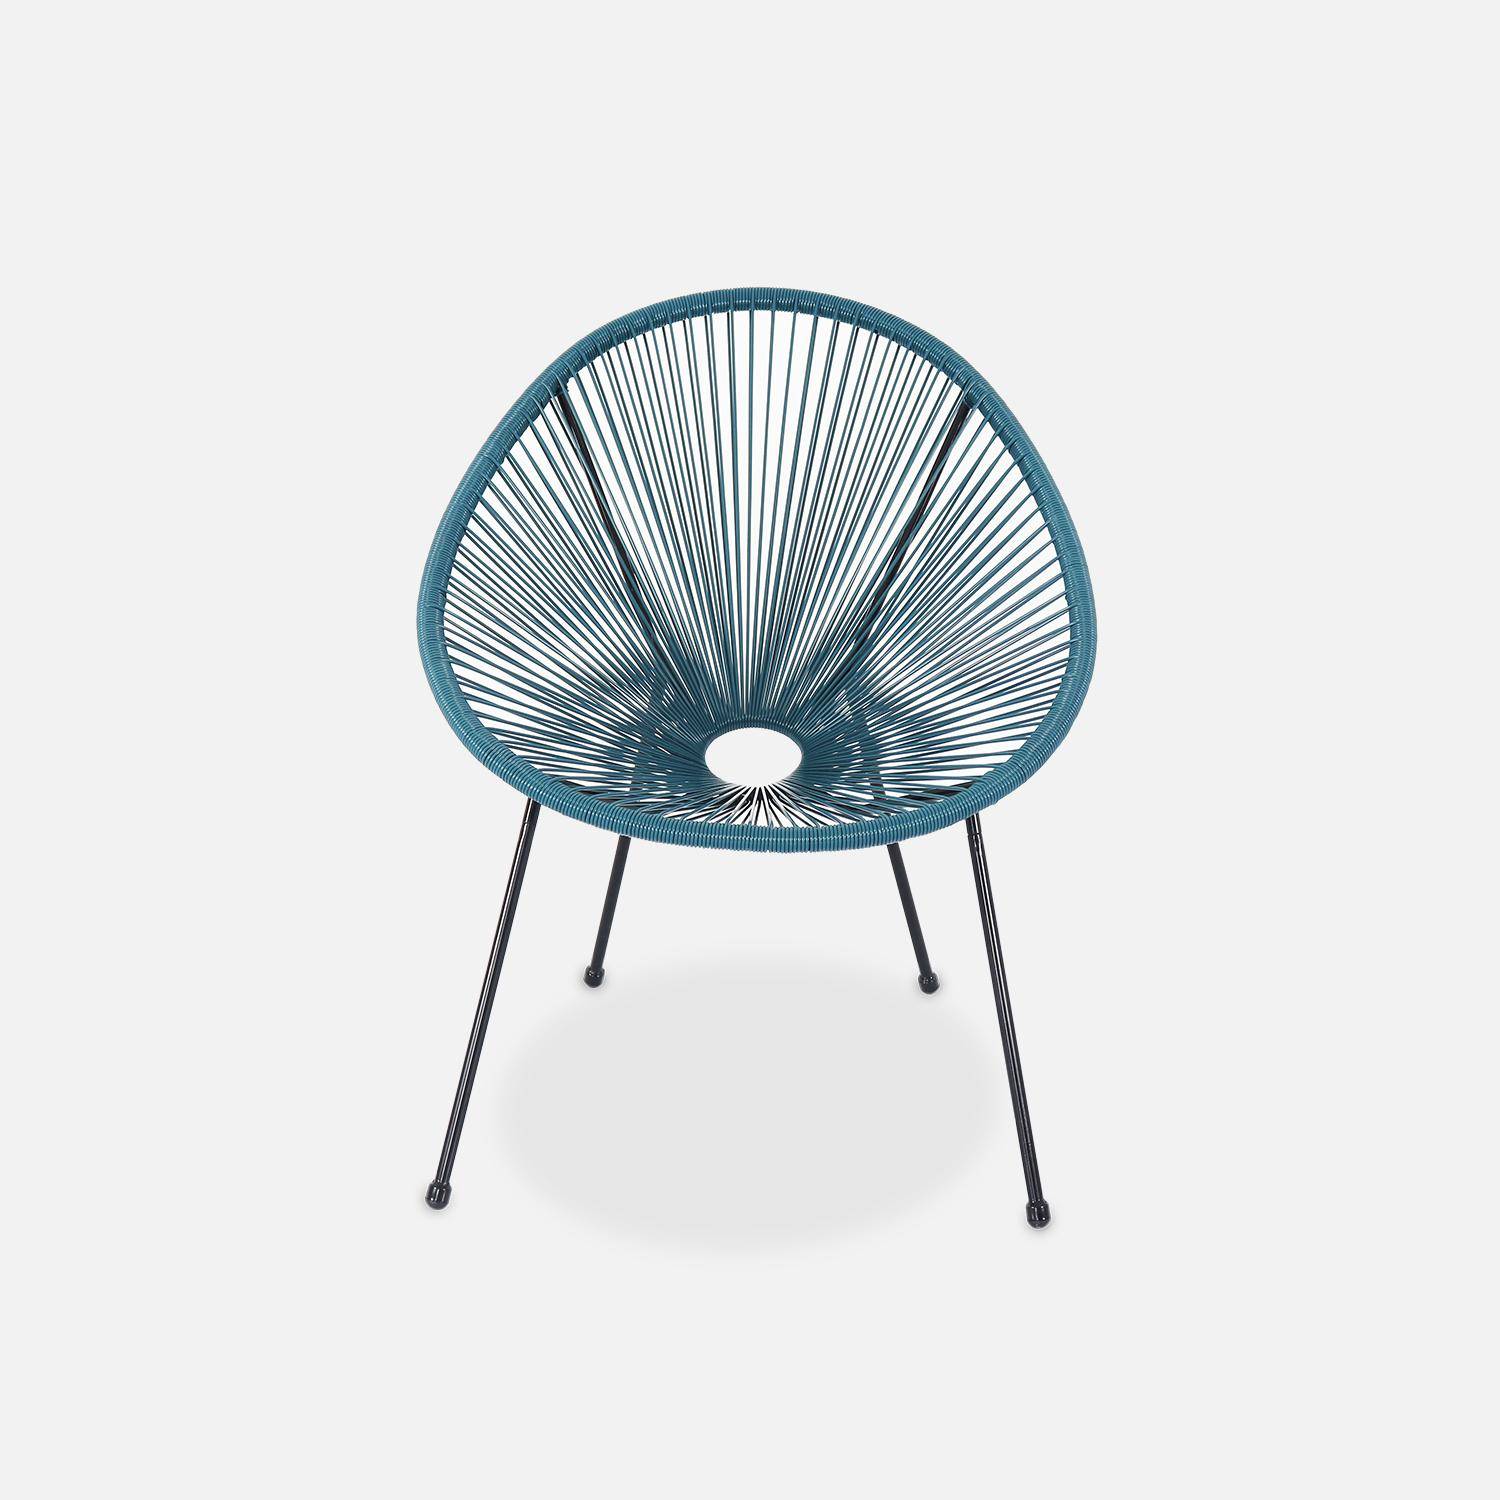 Lot de 2 fauteuils design Oeuf - Acapulco Bleu canard- Fauteuils 4 pieds design rétro, cordage plastique, intérieur / extérieur Photo4